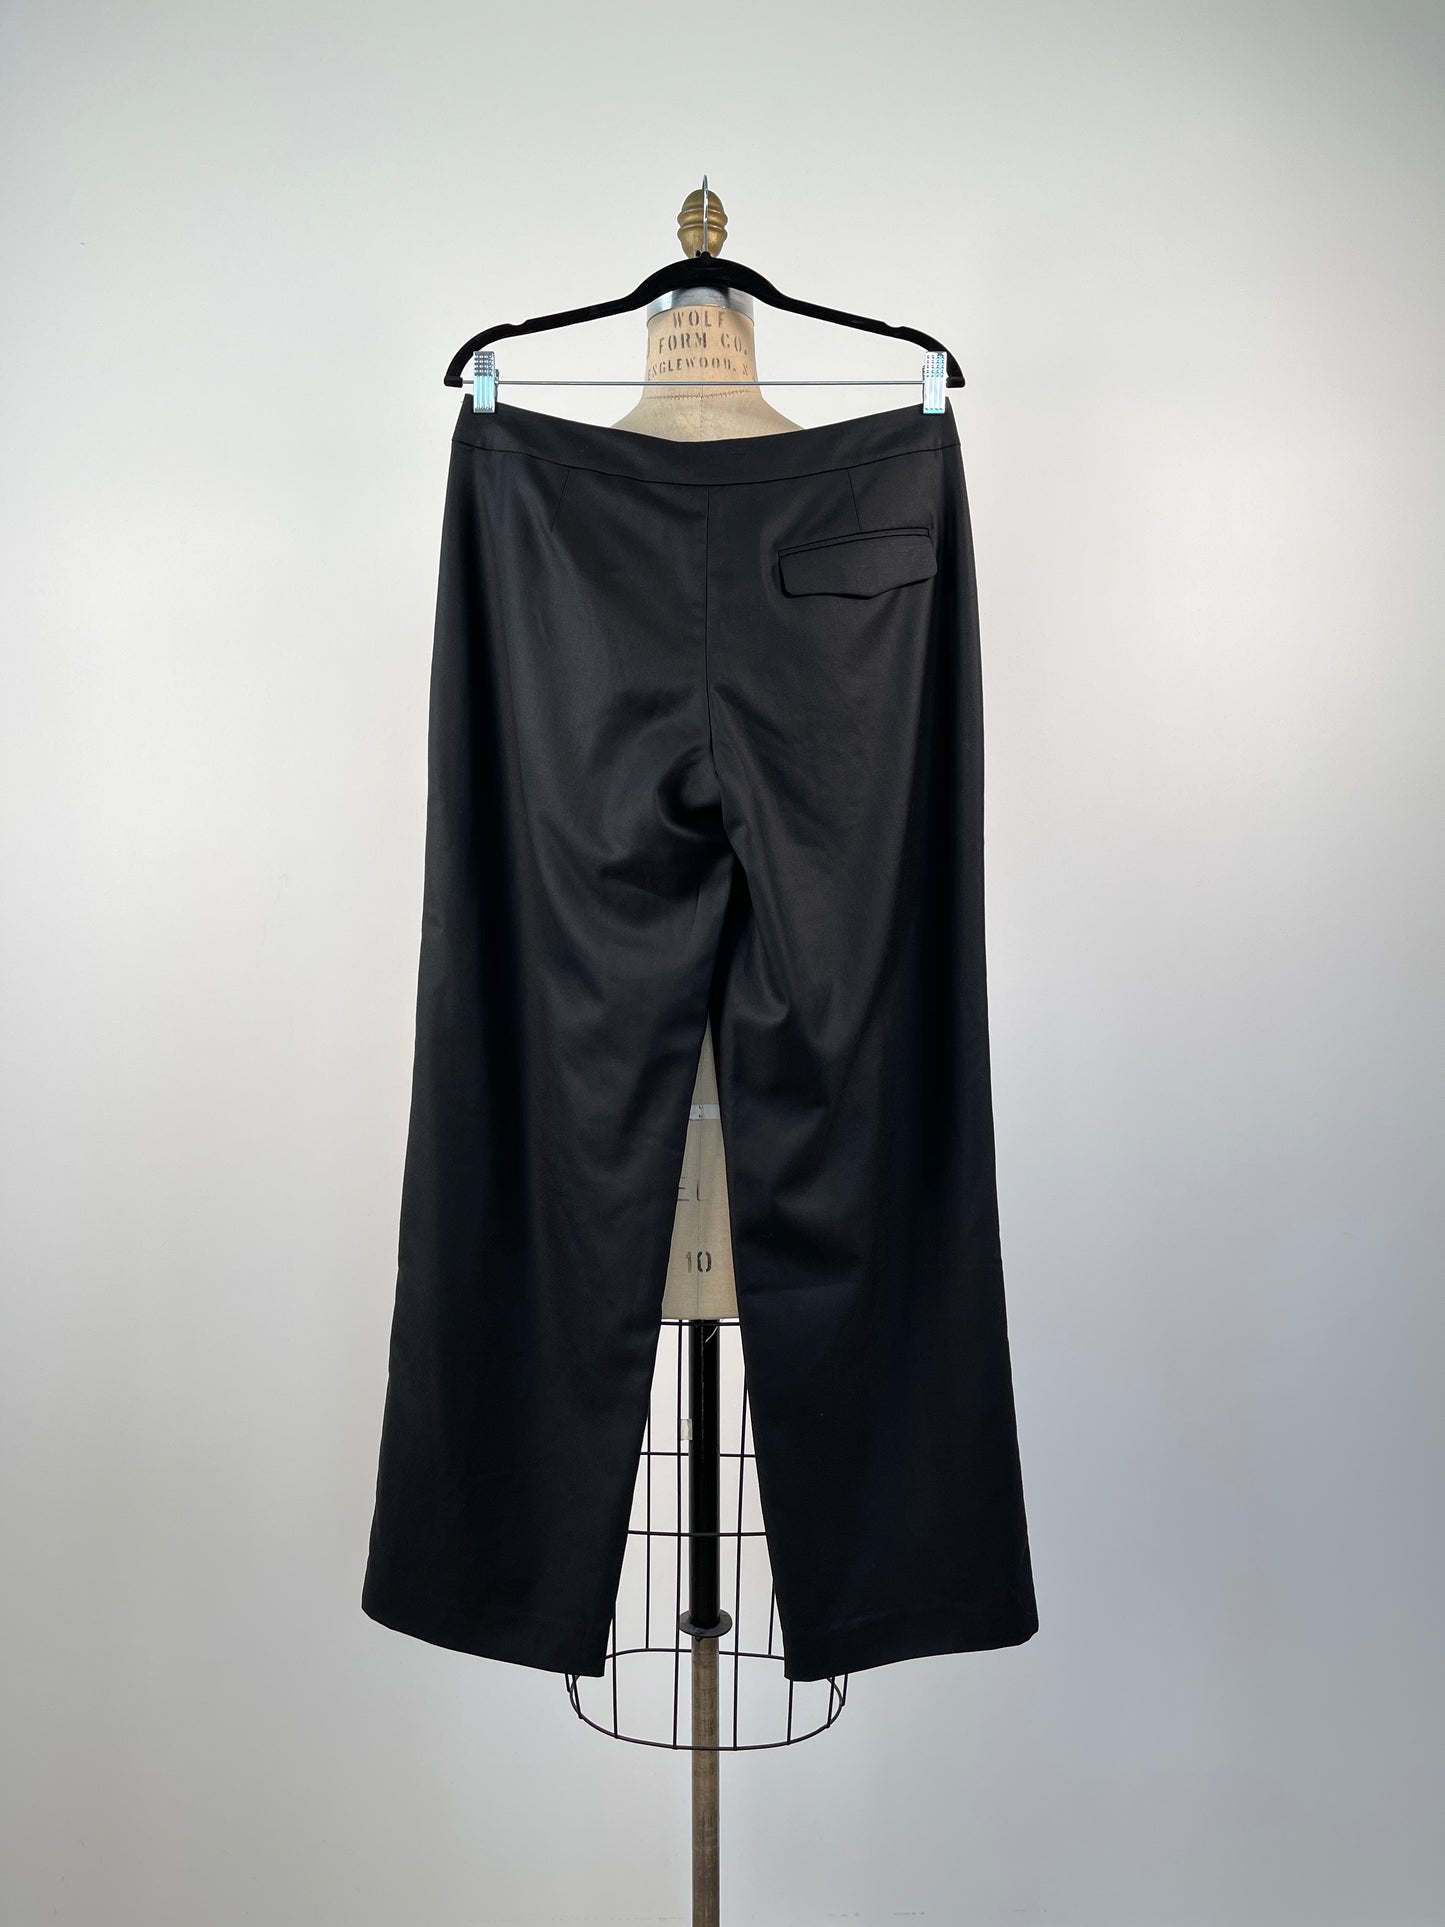 Pantalon noir indémodable en fine laine luxueuse (XS/S)